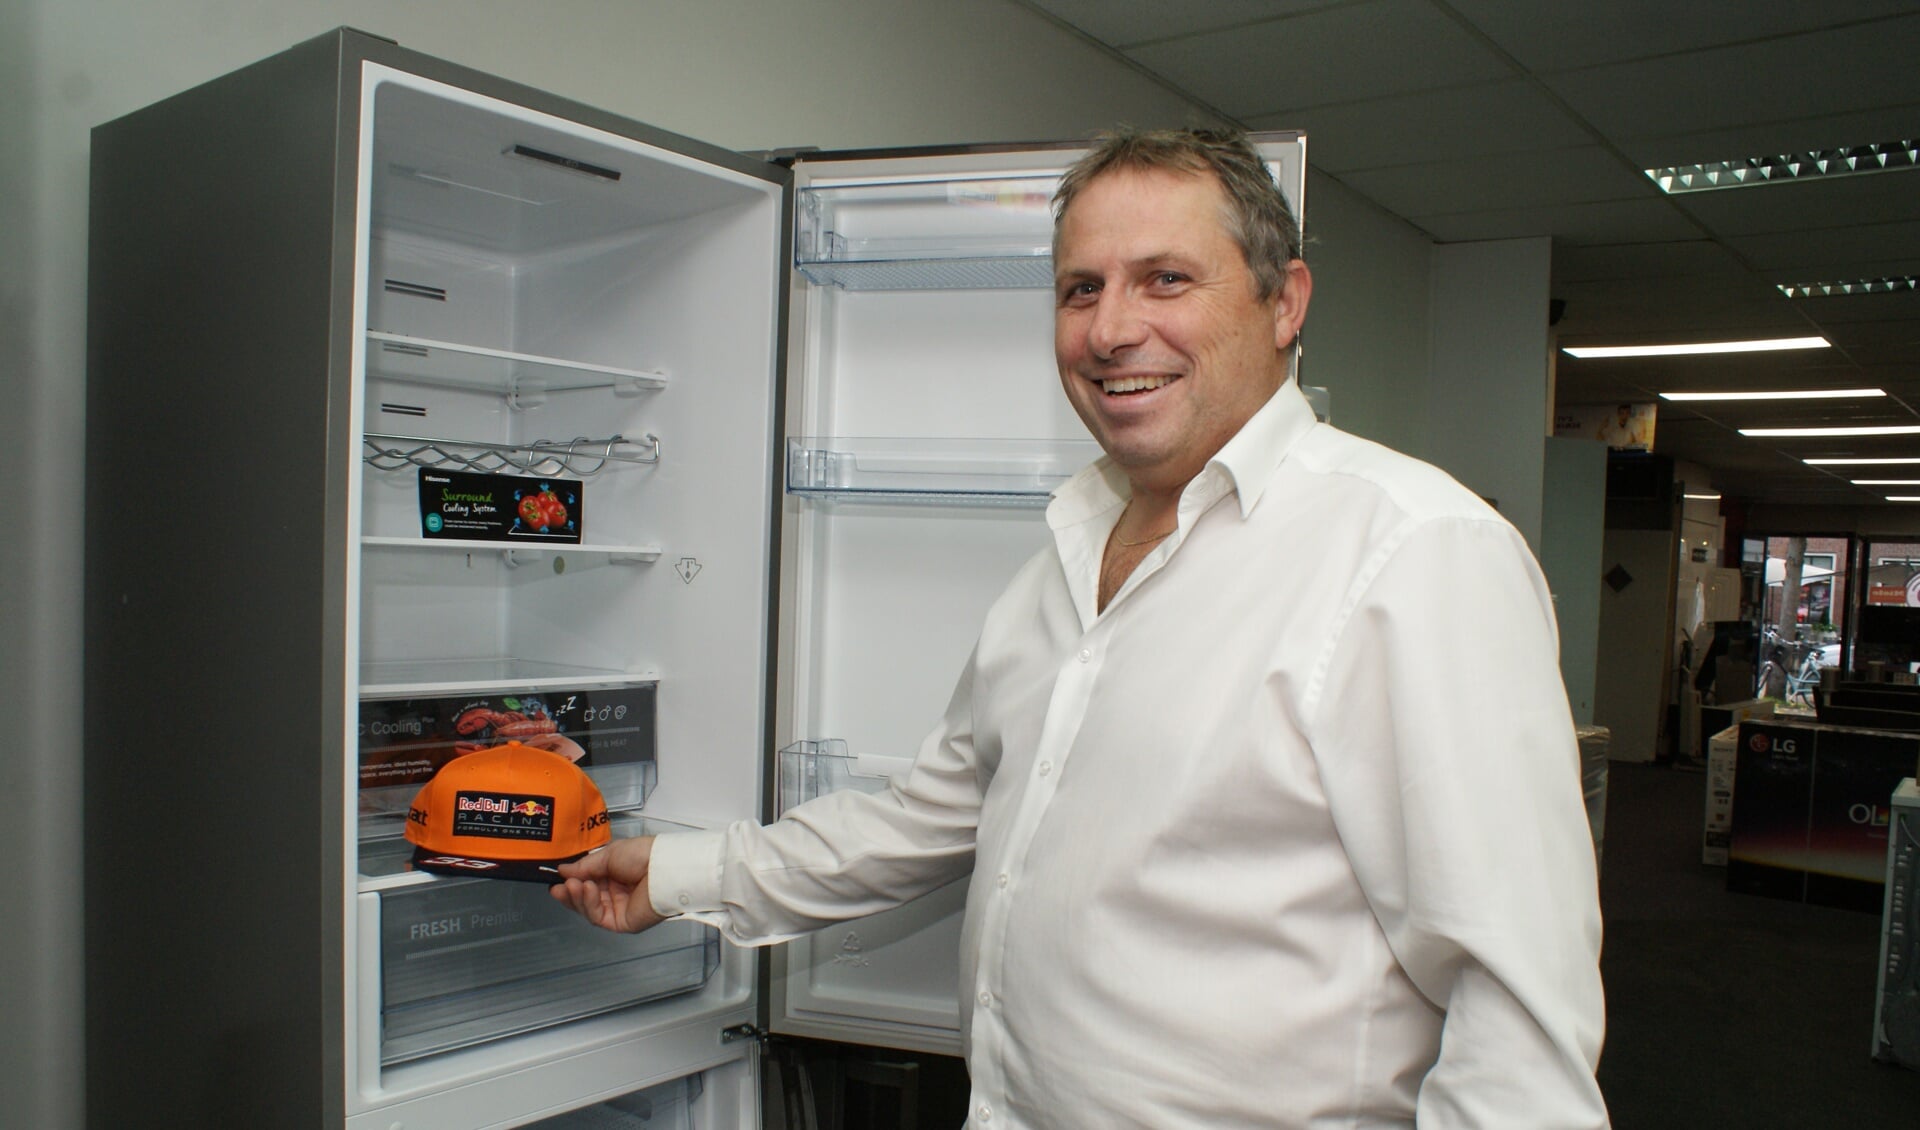 Gerard de Ru met de prachtige maar vooral praktische koelkasten van Hisense. Vanaf deze week te zien bij De Ru. Foto: VSK